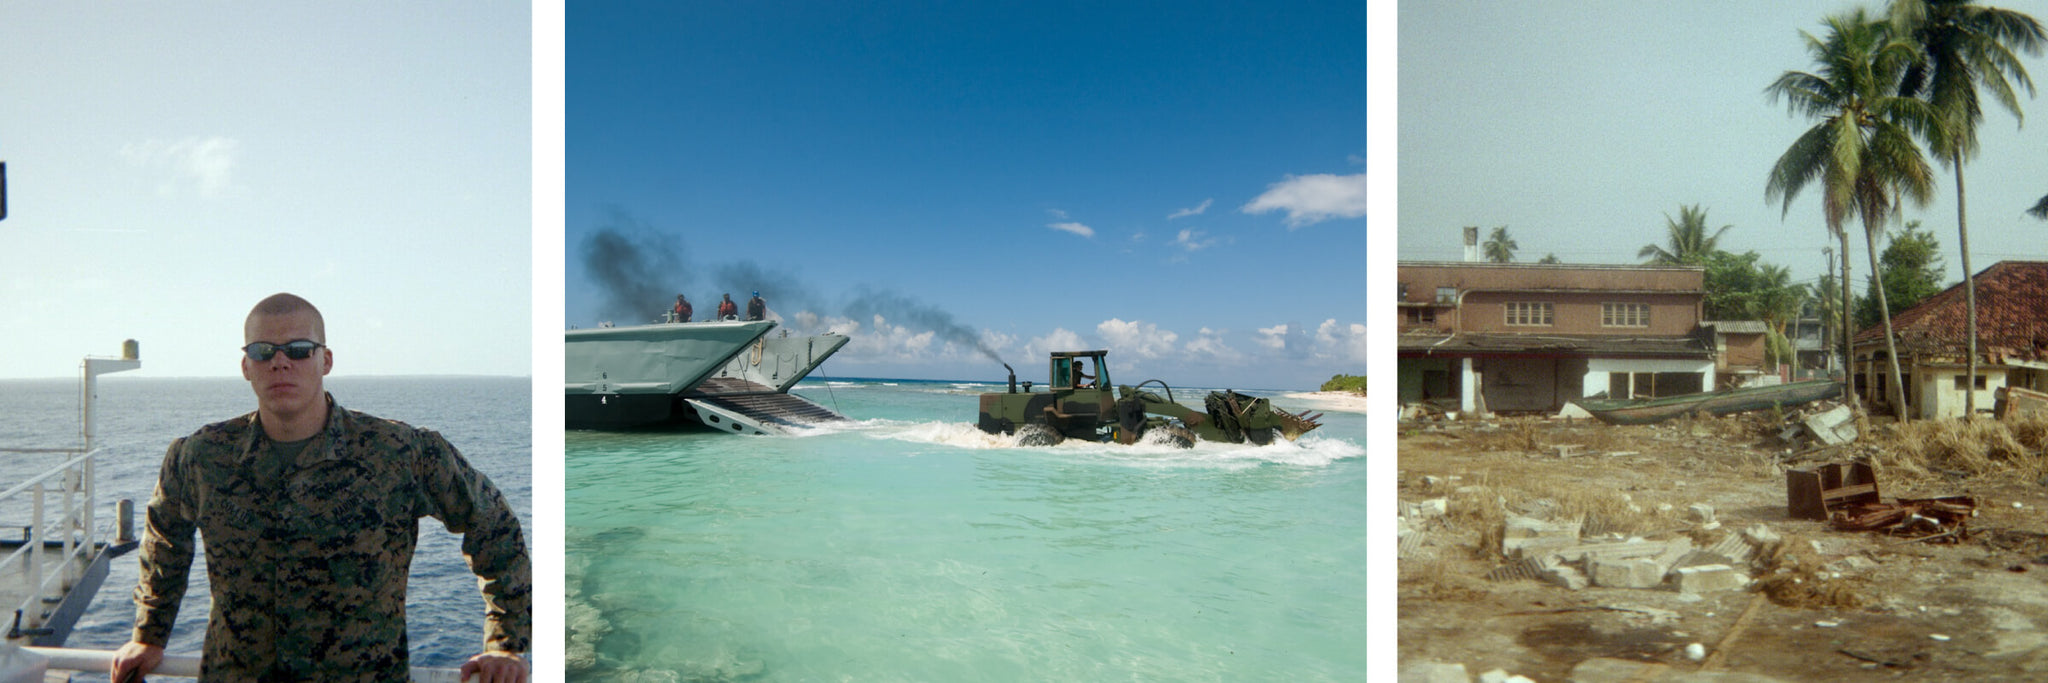 Brandon Collier's military service in Maldives after Tsunami